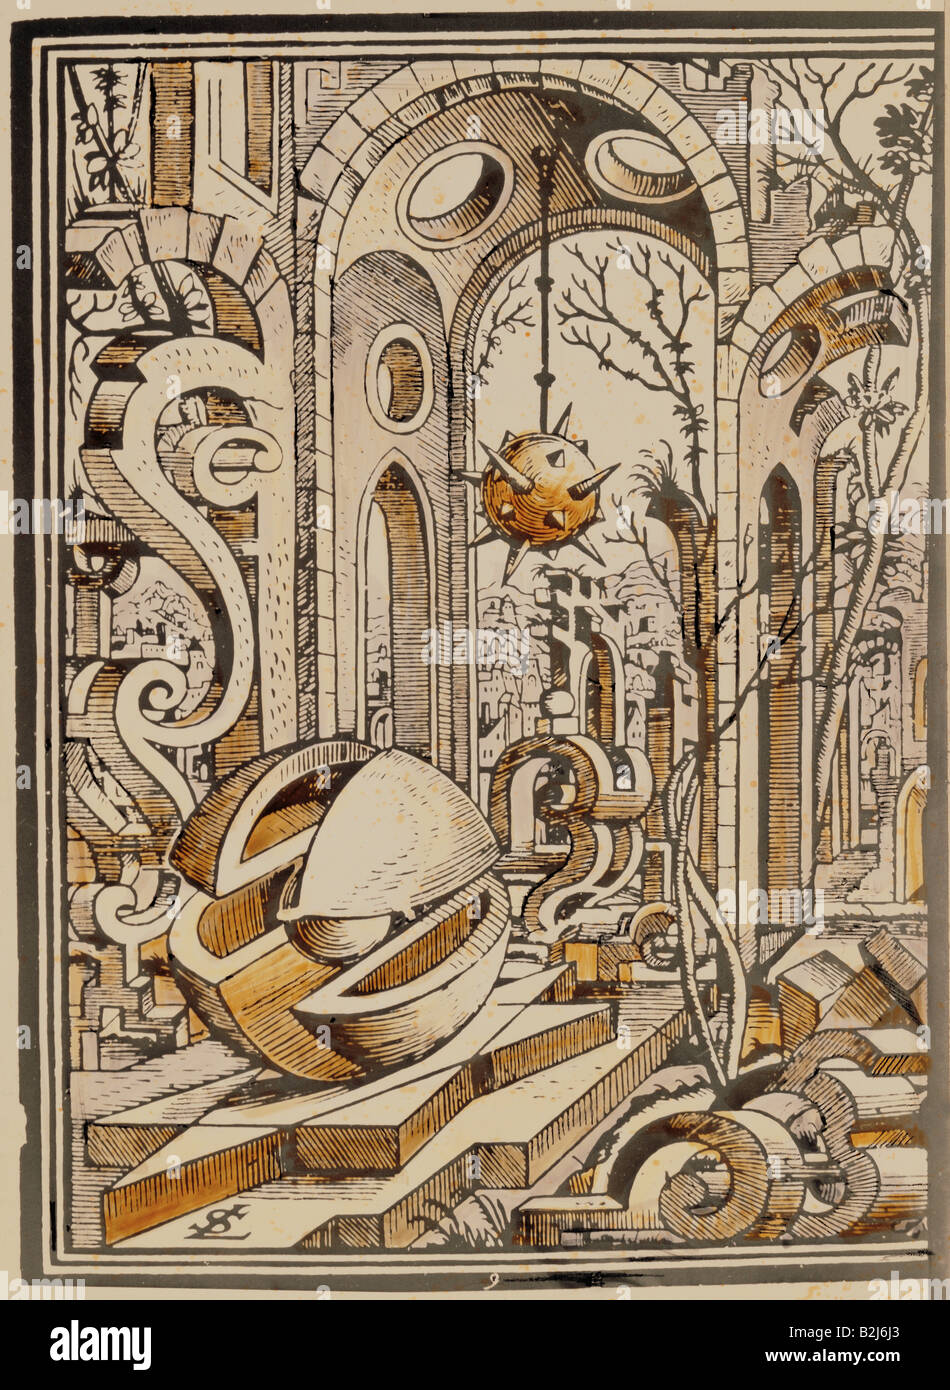 La scienza, geometria, paesaggio geometrico, incisione su rame, 'Geometria et Perspectiva' da Lorenz Stoer, Augsburg, 1567, collezione privata, , artista del diritto d'autore non deve essere cancellata Foto Stock